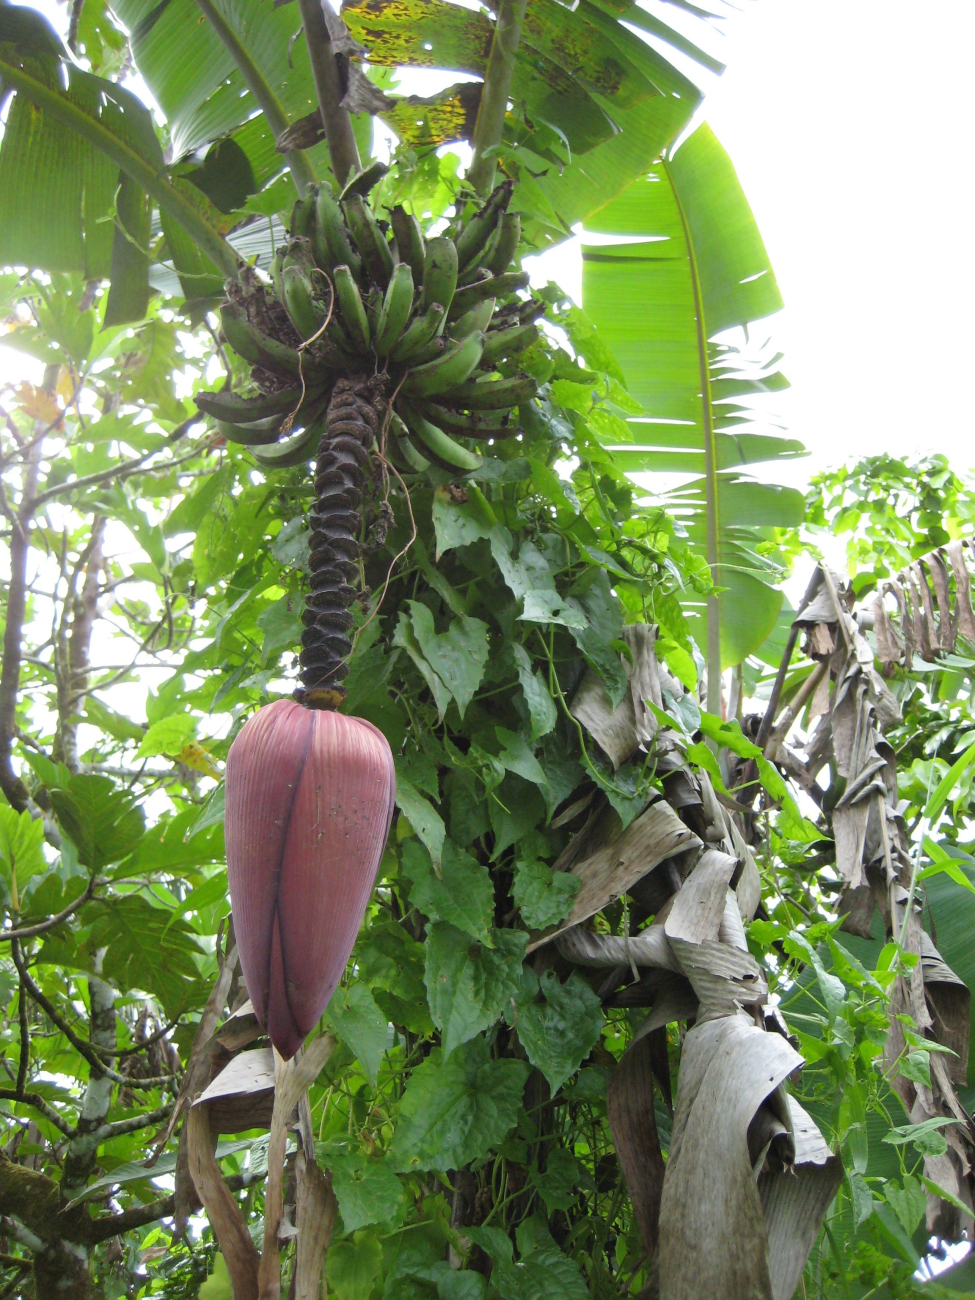 Banana tree with paradisiaca flower